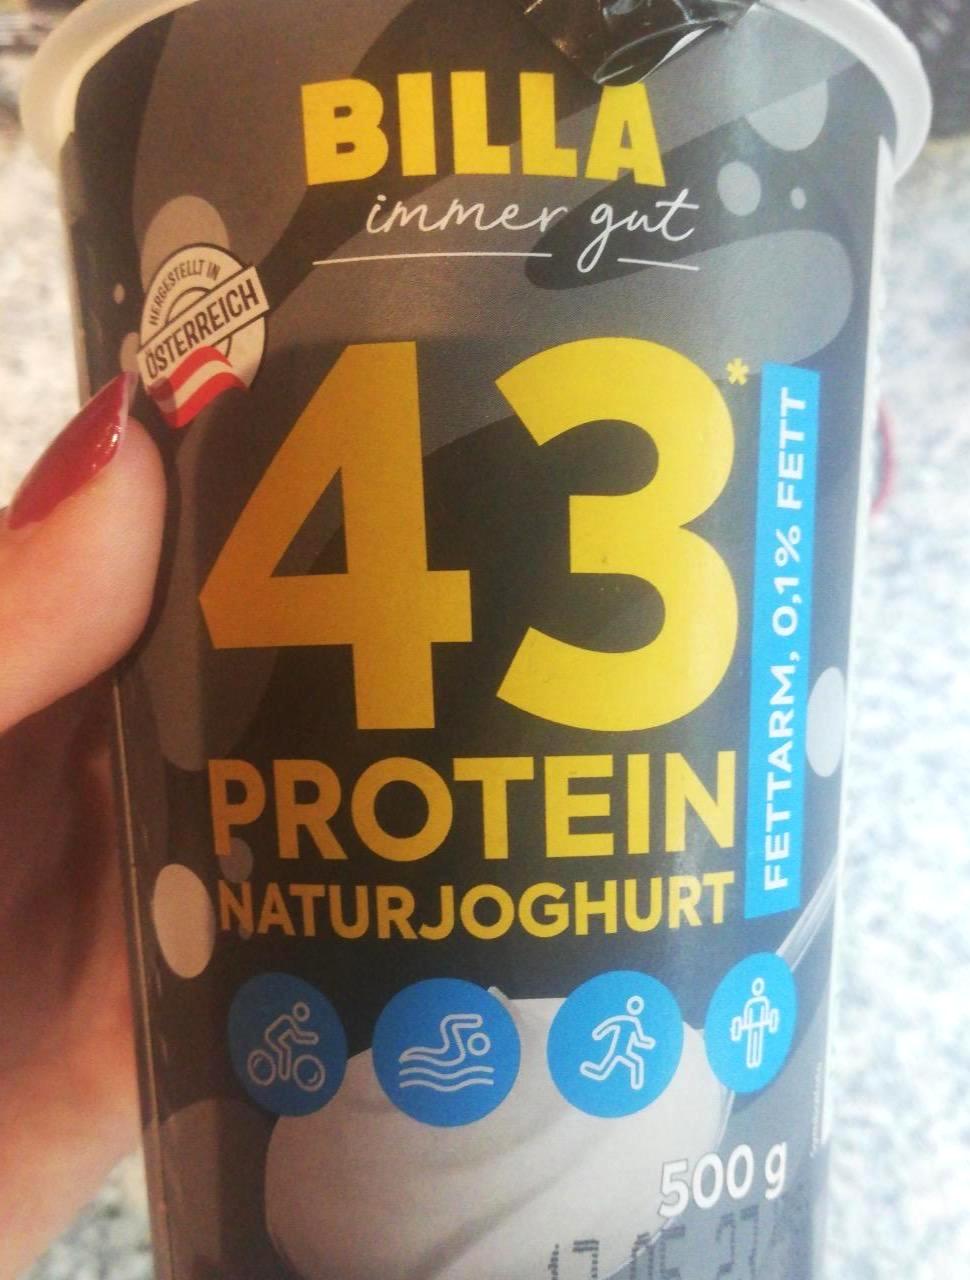 Képek - Protein naturjoghurt Billa